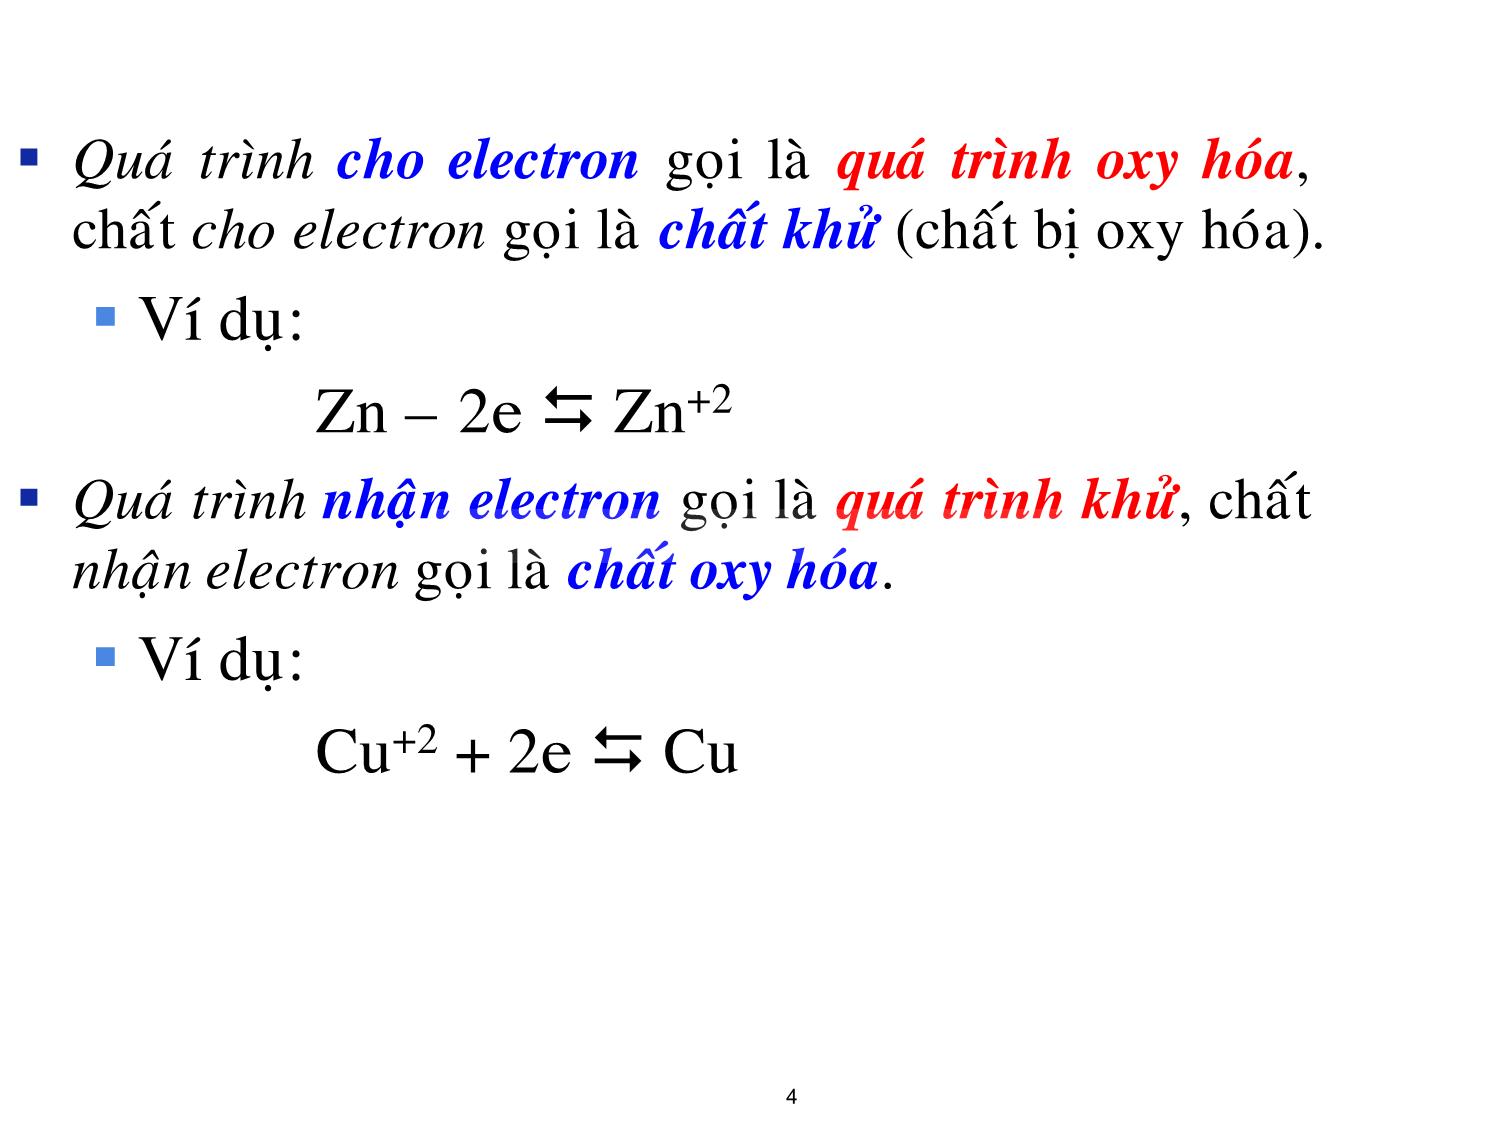 Bài giảng Hóa đại cương: Điện hóa học - Nguyễn Minh Kha trang 4